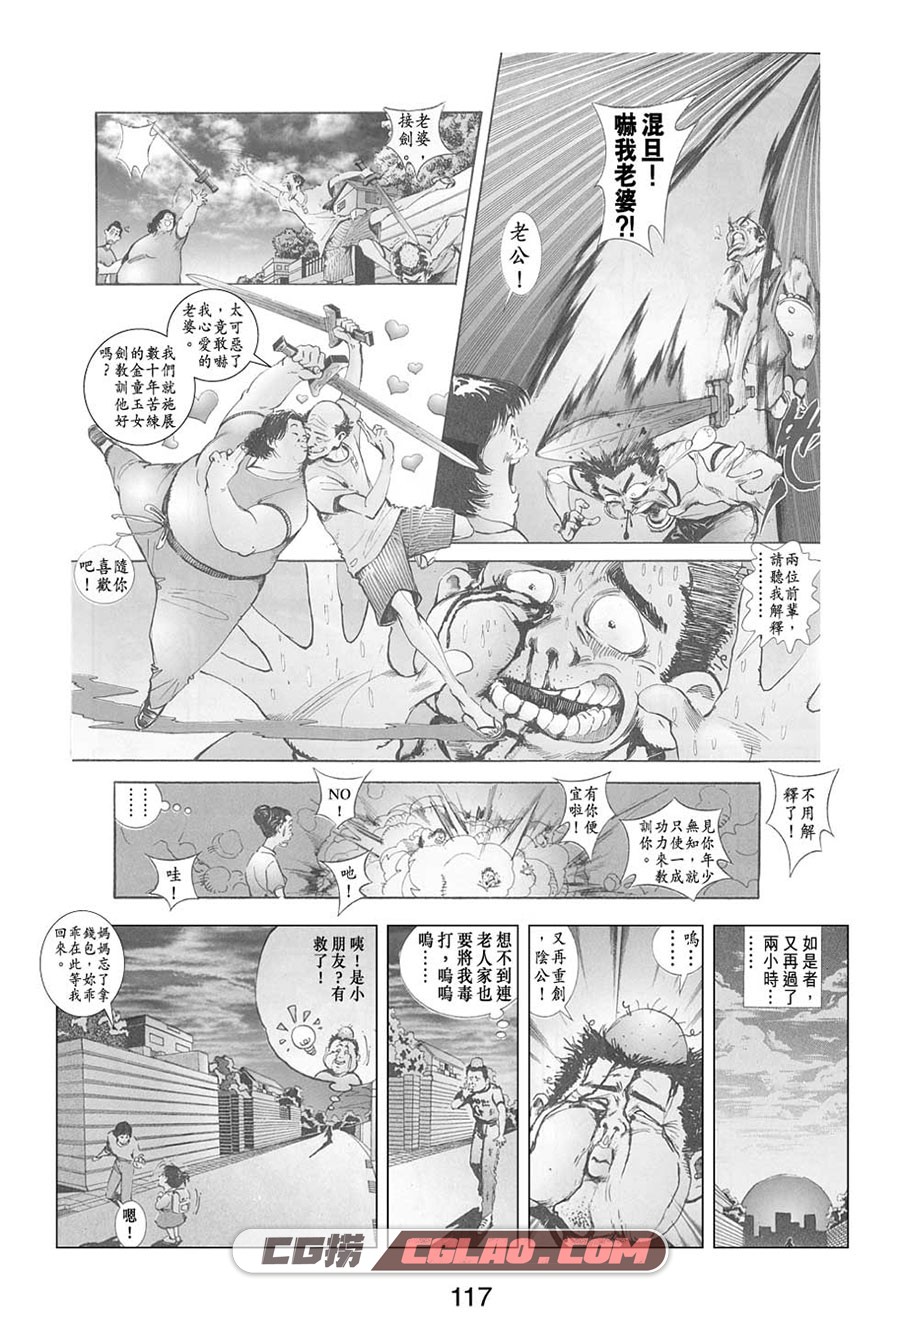 万人夜话 玄宝 1-6册 漫画全集下载 百度网盘,gi001_117.jpg